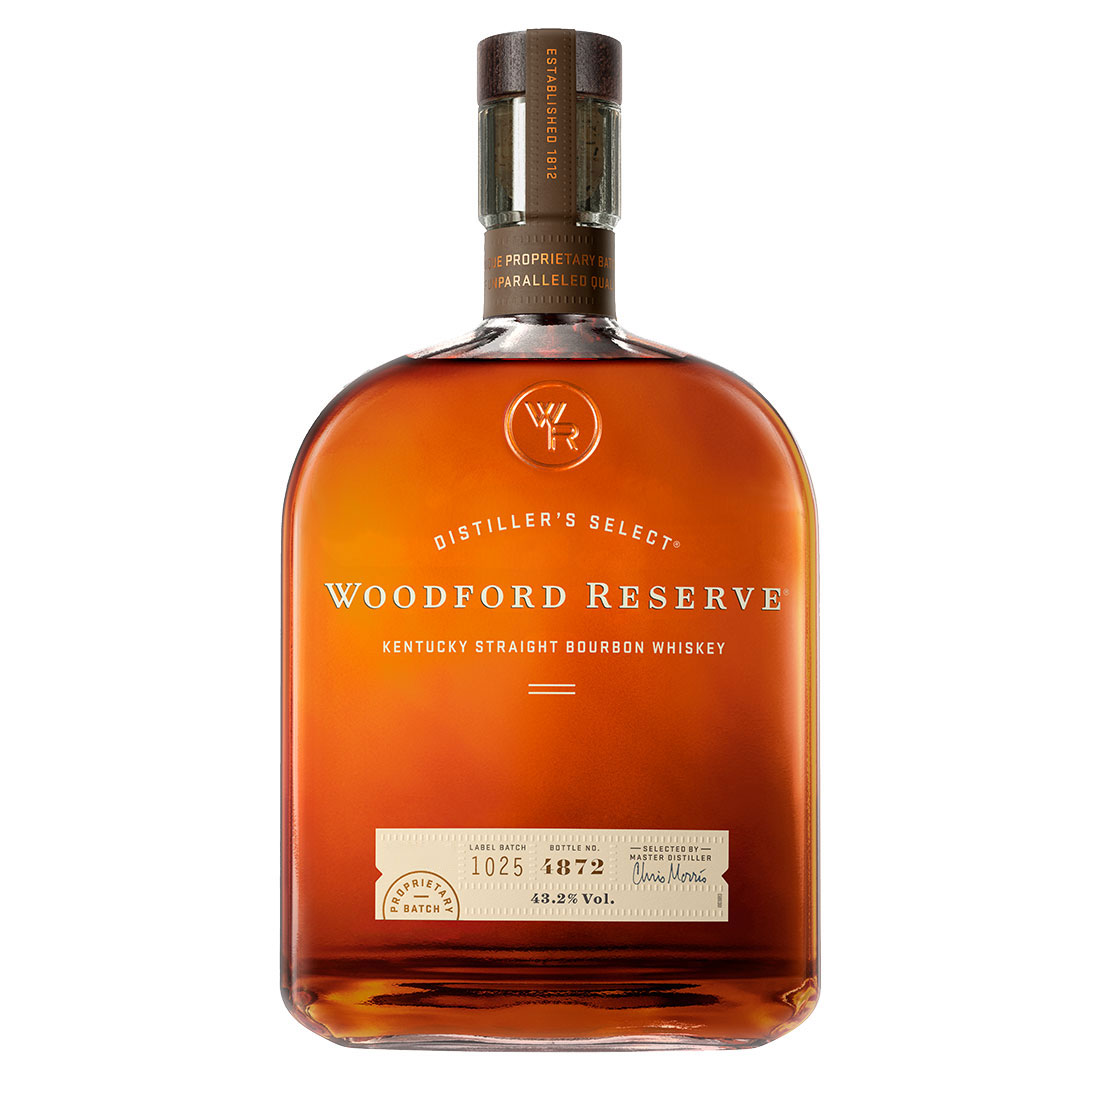 LB_Bottle-Woodford-Reserve-Kentucky-Straight-Bourbon